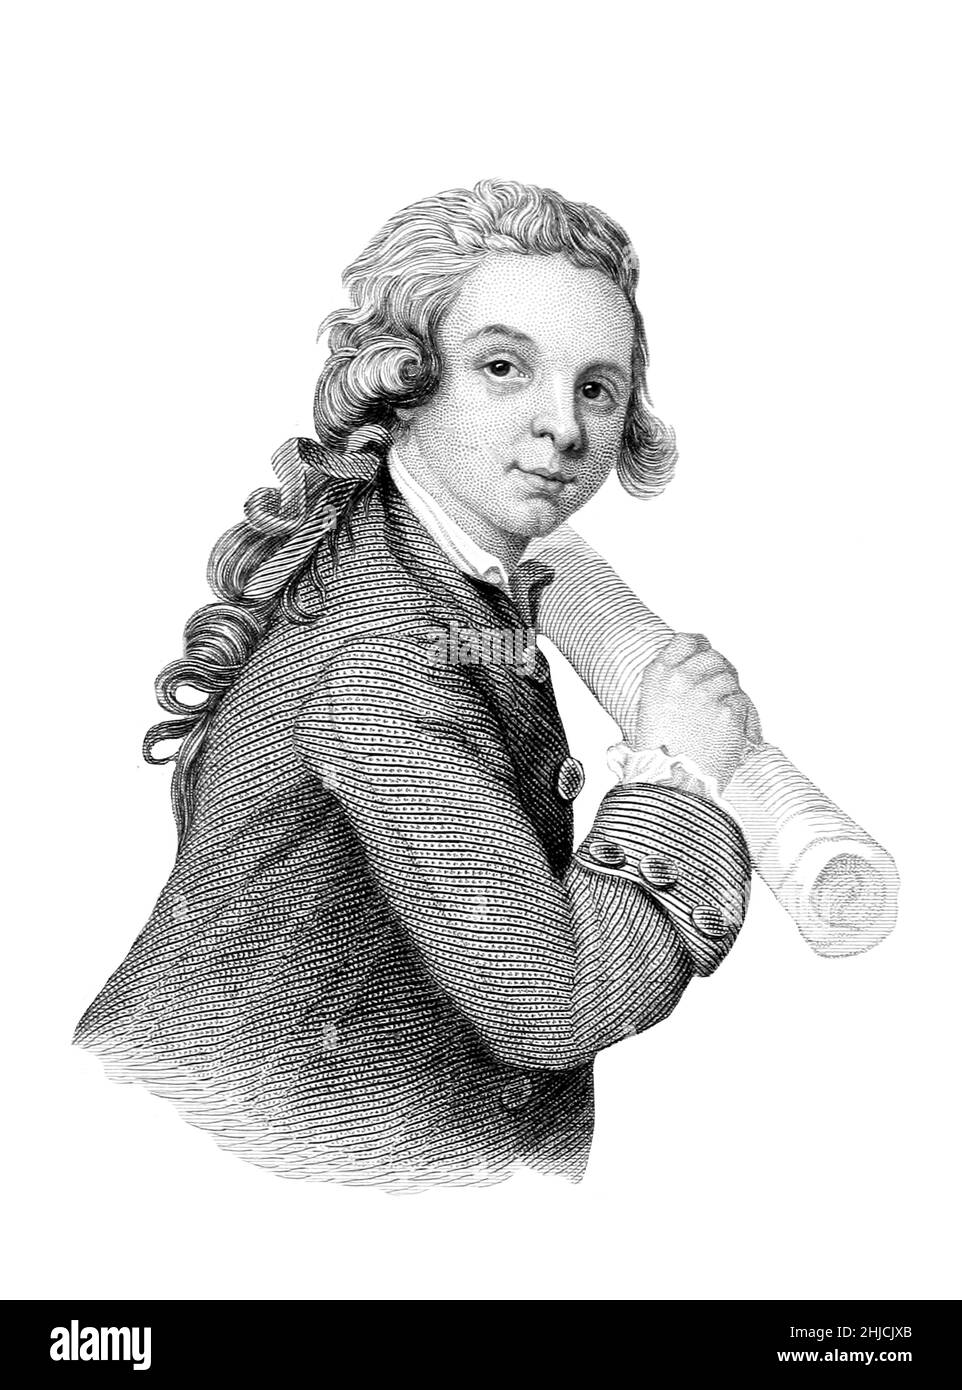 Wolfgang Amadeus Mozart 1756-1791) war ein Wunderkind und österreichischer Komponist der Klassik. Illustration aus den Briefen von Wolfgang Amadeus Mozart, 1866. Stockfoto